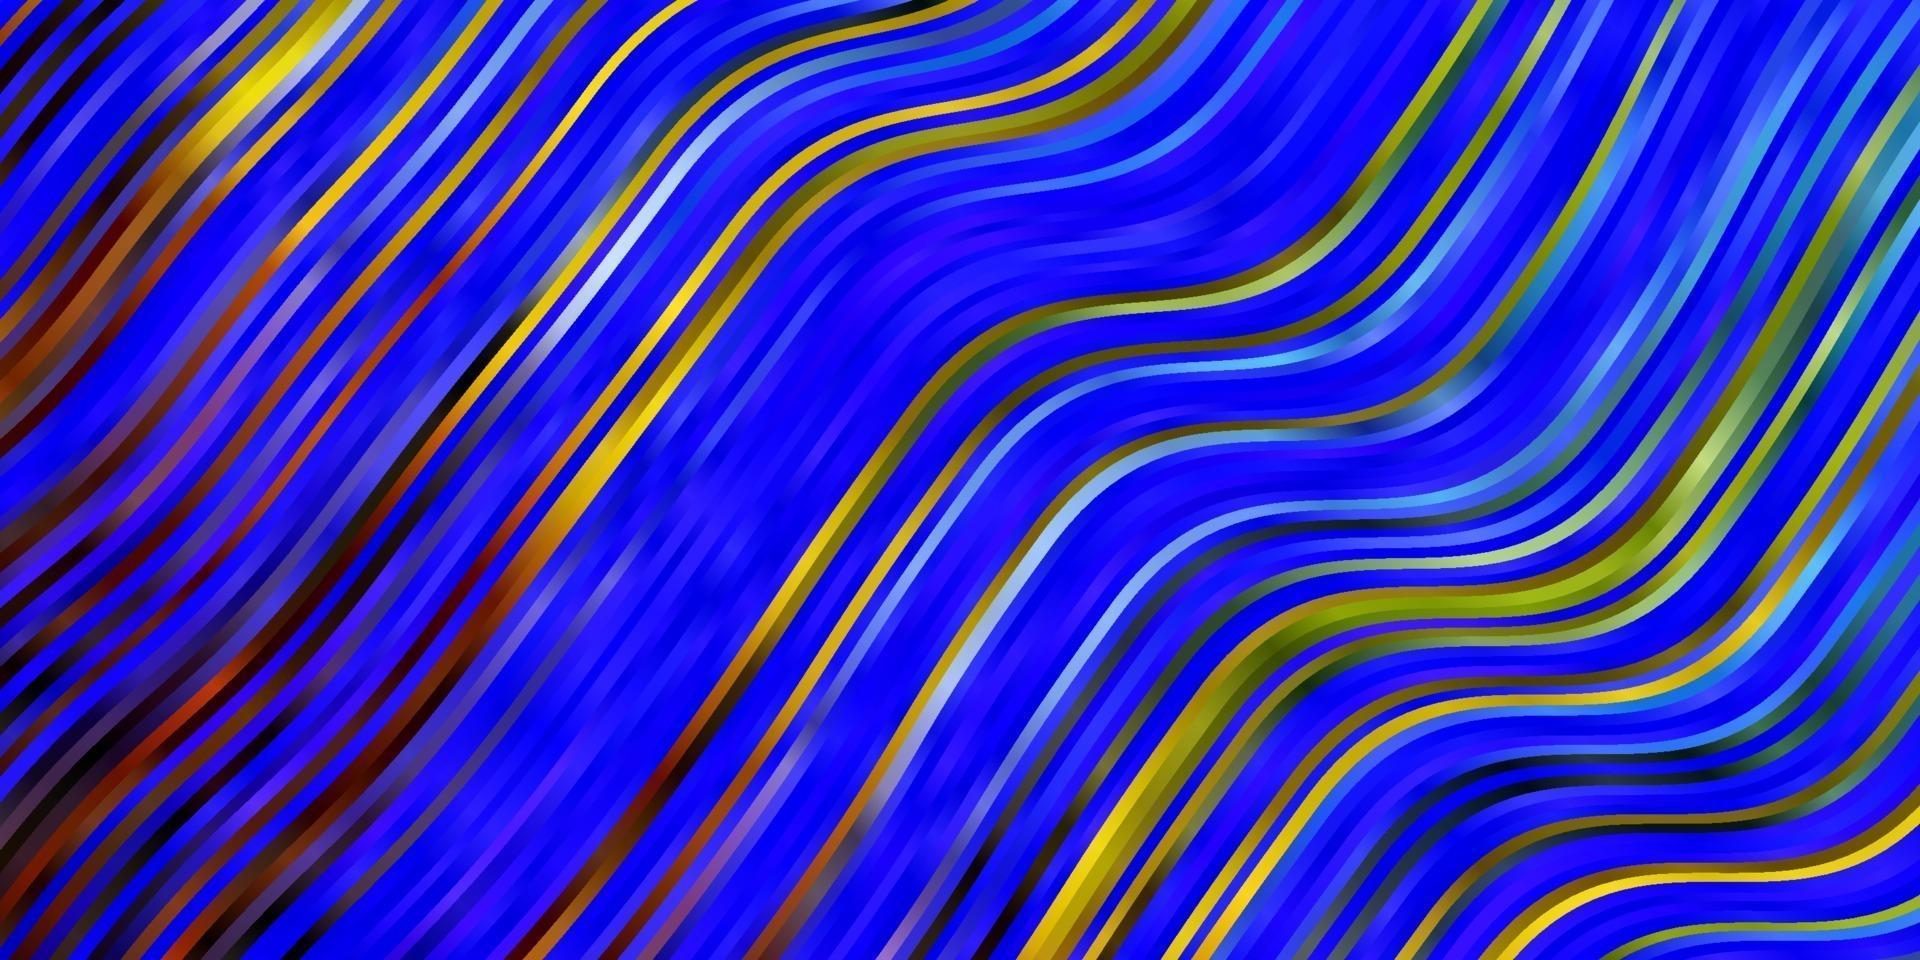 hellblauer, grüner Vektorhintergrund mit gebogenen Linien. vektor